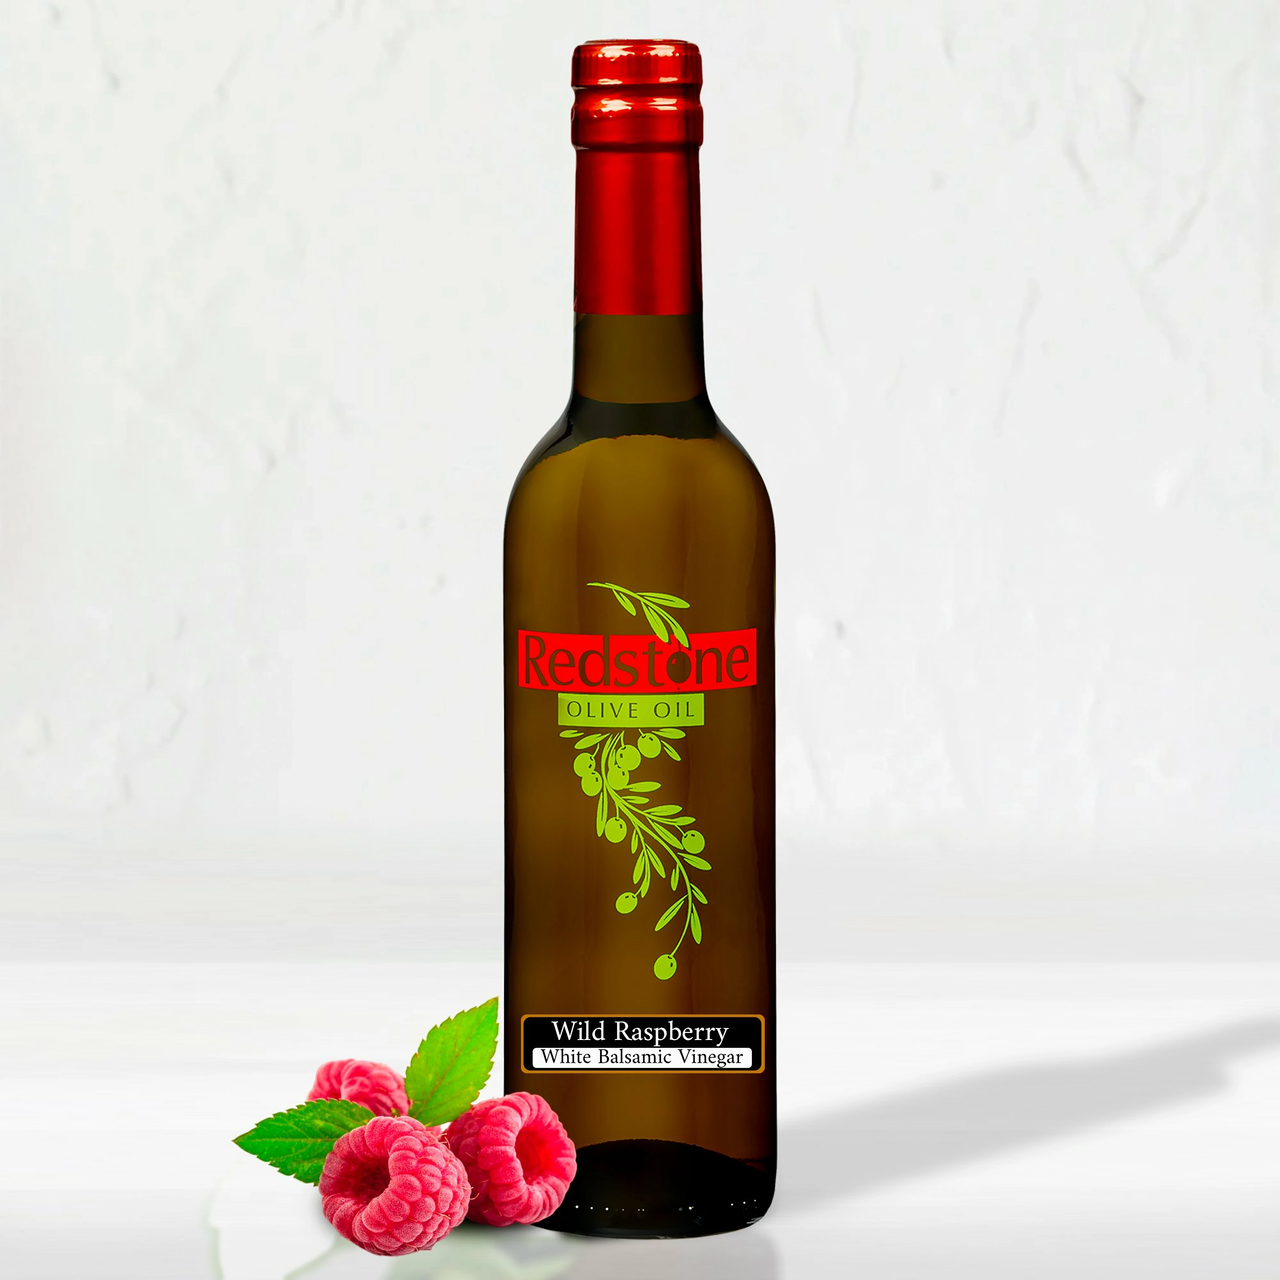 Cascadian Wild Raspberry White Balsamic Vinegar bottle with fresh raspberries